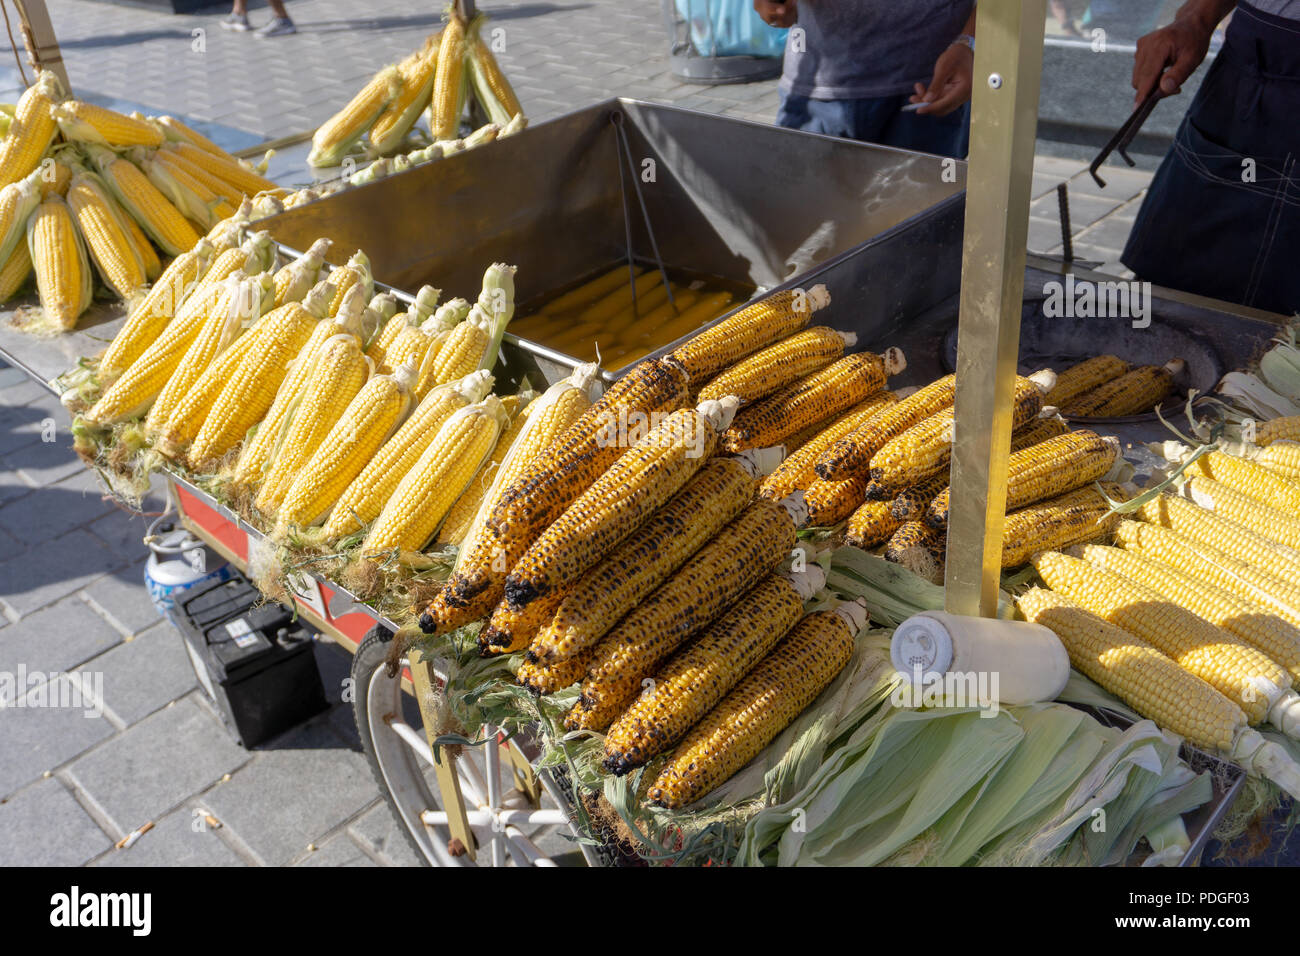 Mais und gegrillte zusammen in der Straße essen in Istanbul. Türkische Street Food Kultur hat viele Optionen für Vegetarier wie z.b. Mais. Stockfoto